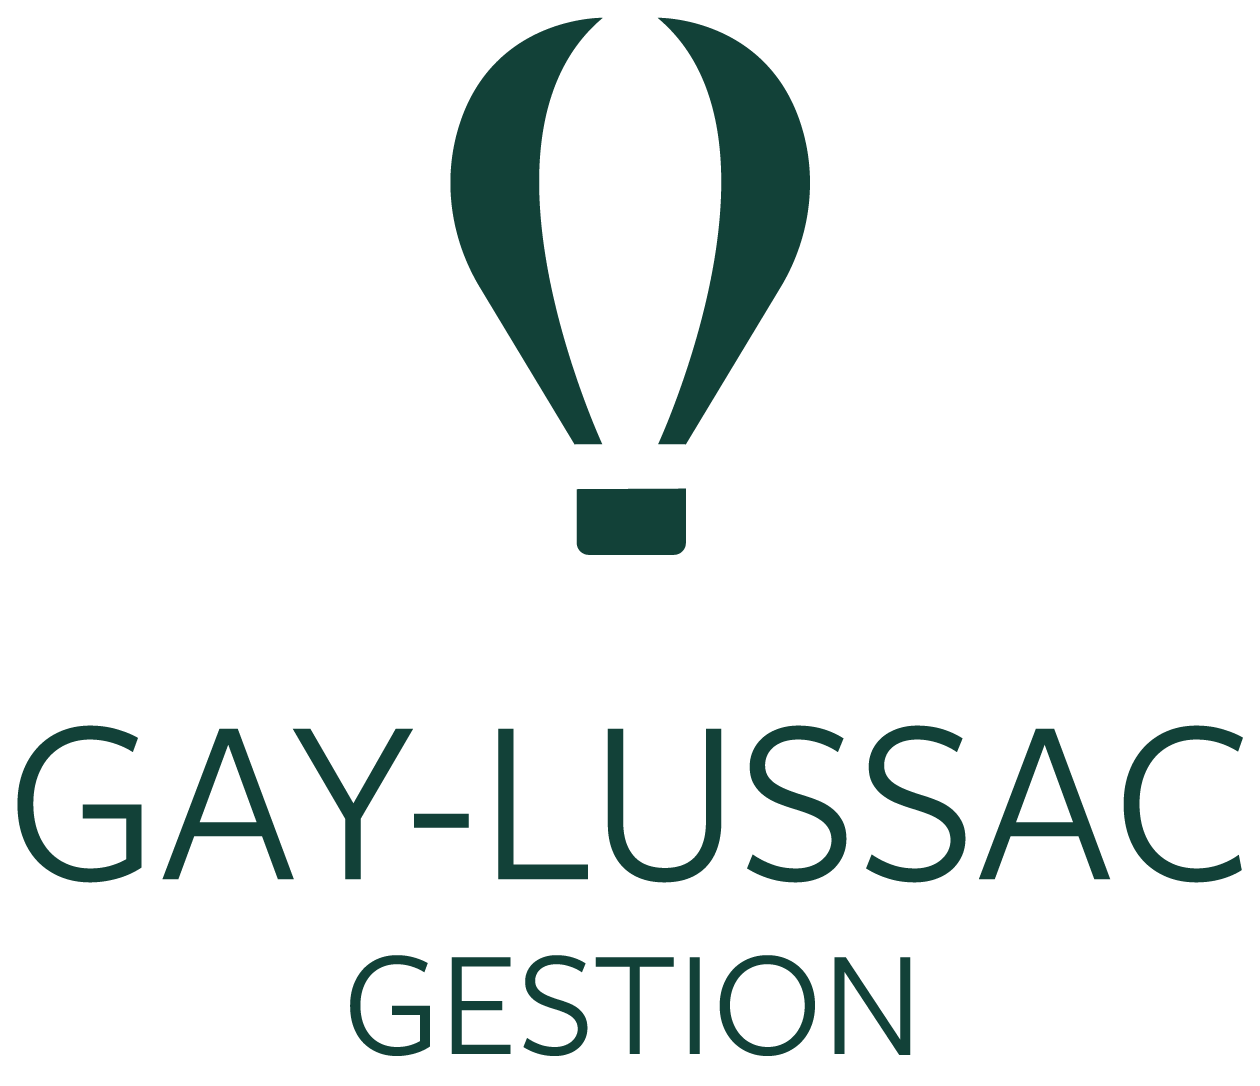 GAY LUSSAC GESTION